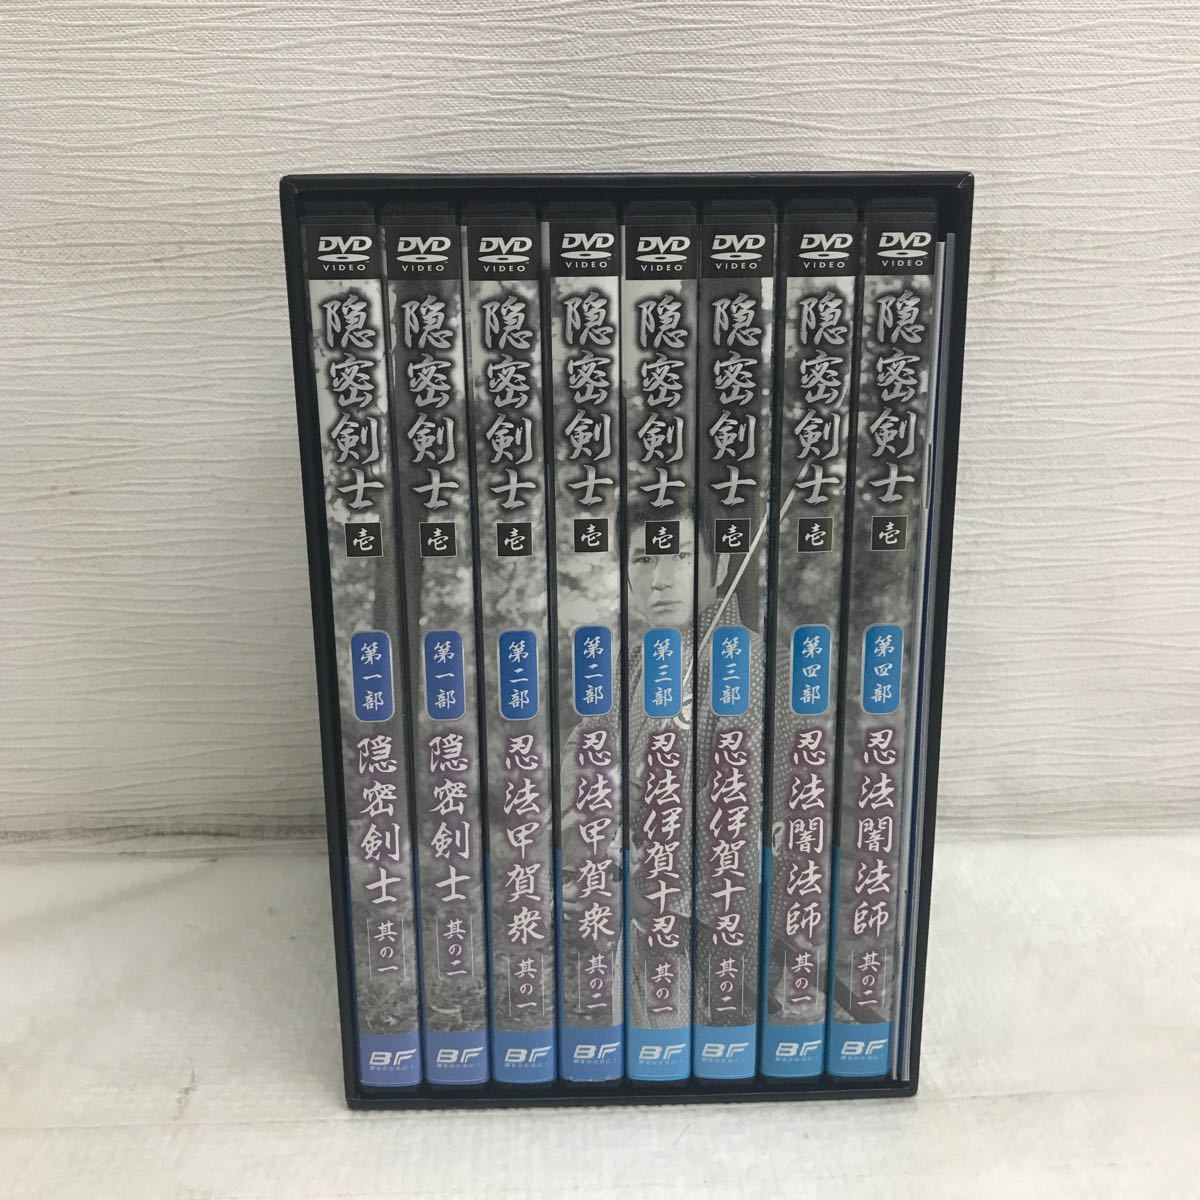 PY0221N 隠密剣士 壱 第一部〜第四部 DVD BOX ボックス 8枚組 セル版